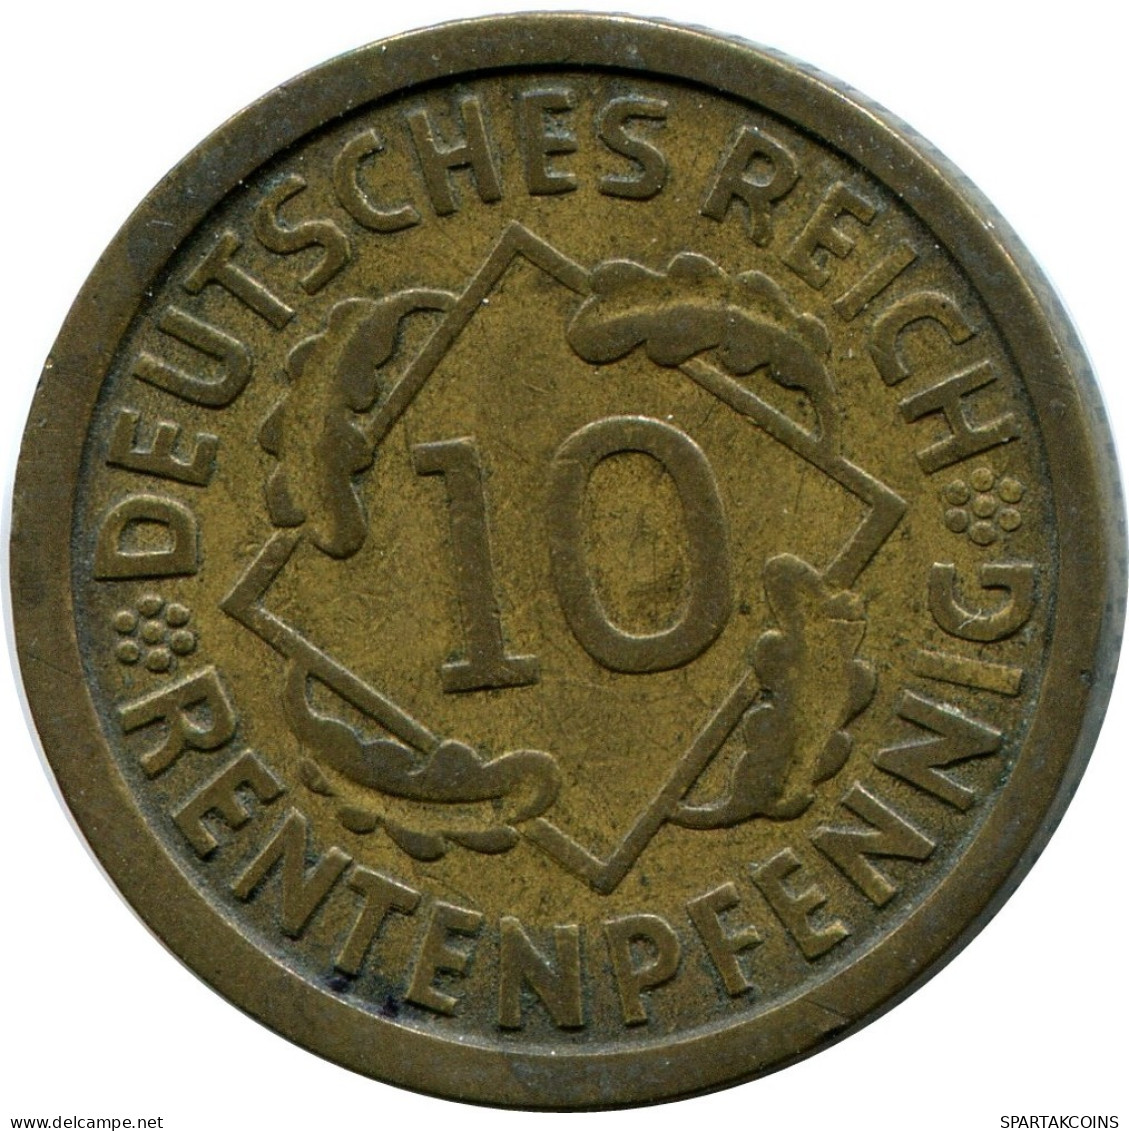 10 RENTENPFENNIG 1924 J ALEMANIA Moneda GERMANY #DB935.E.A - 10 Rentenpfennig & 10 Reichspfennig